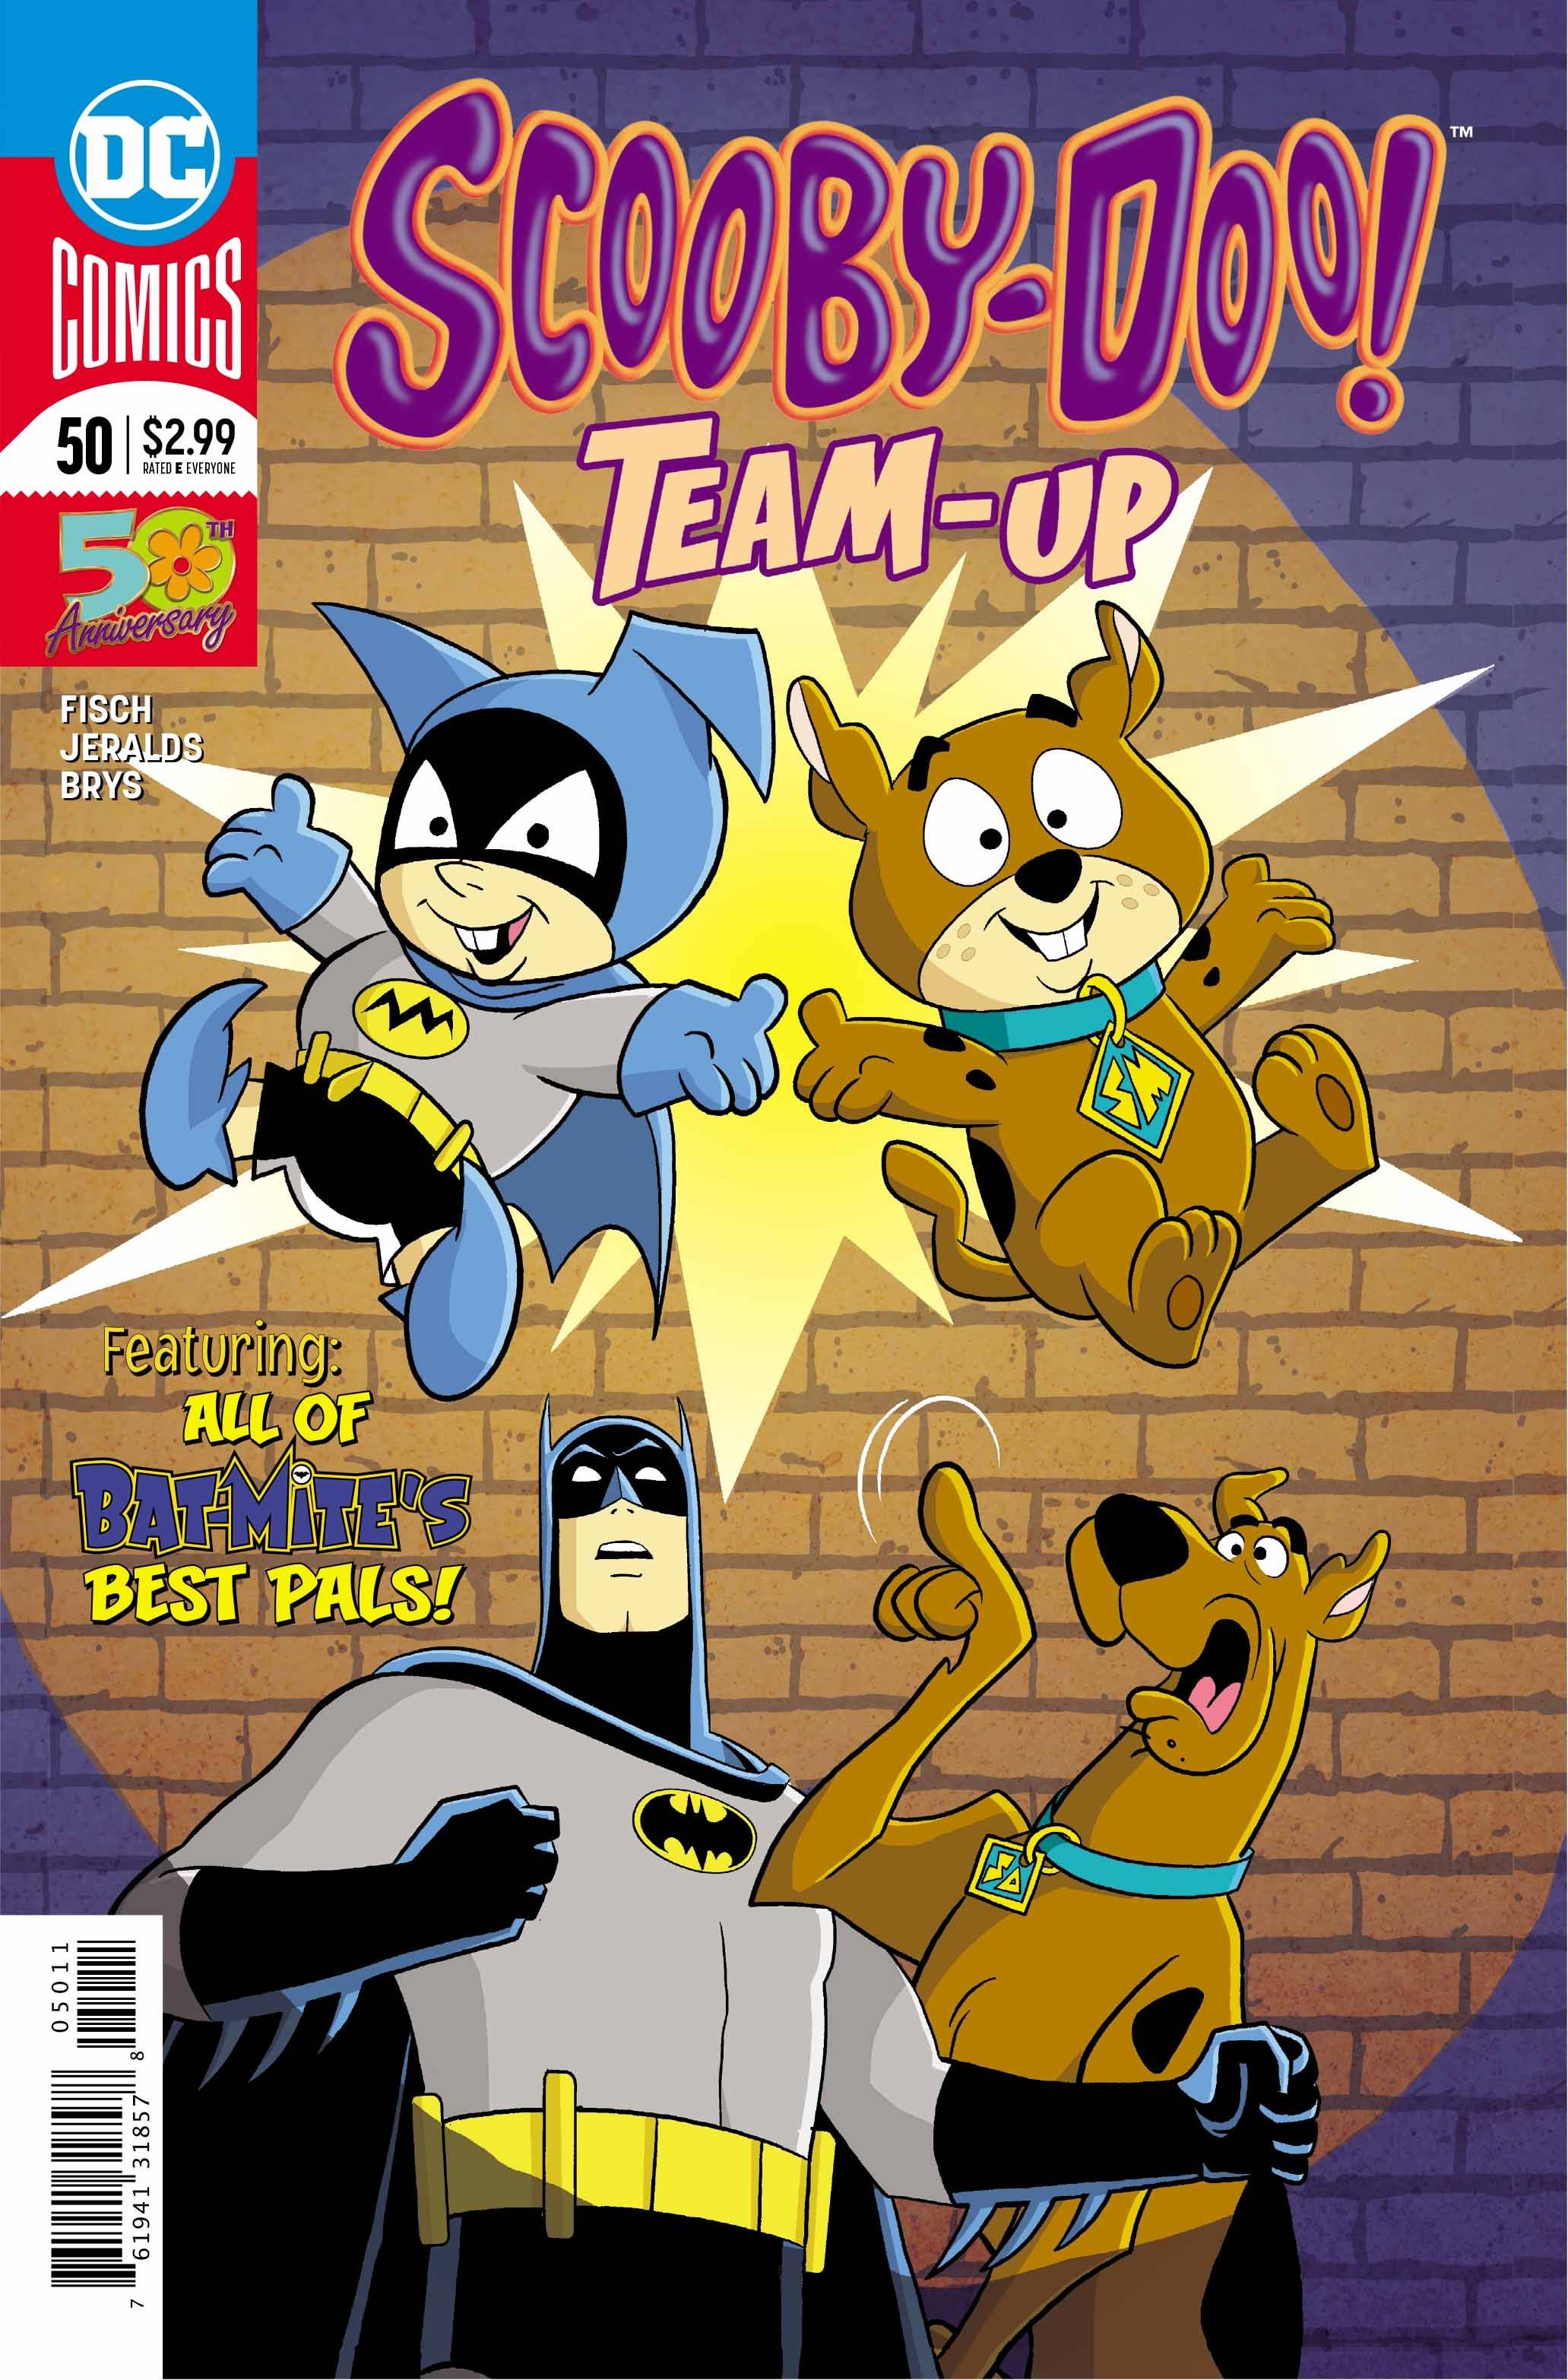 Scooby-doo team-up